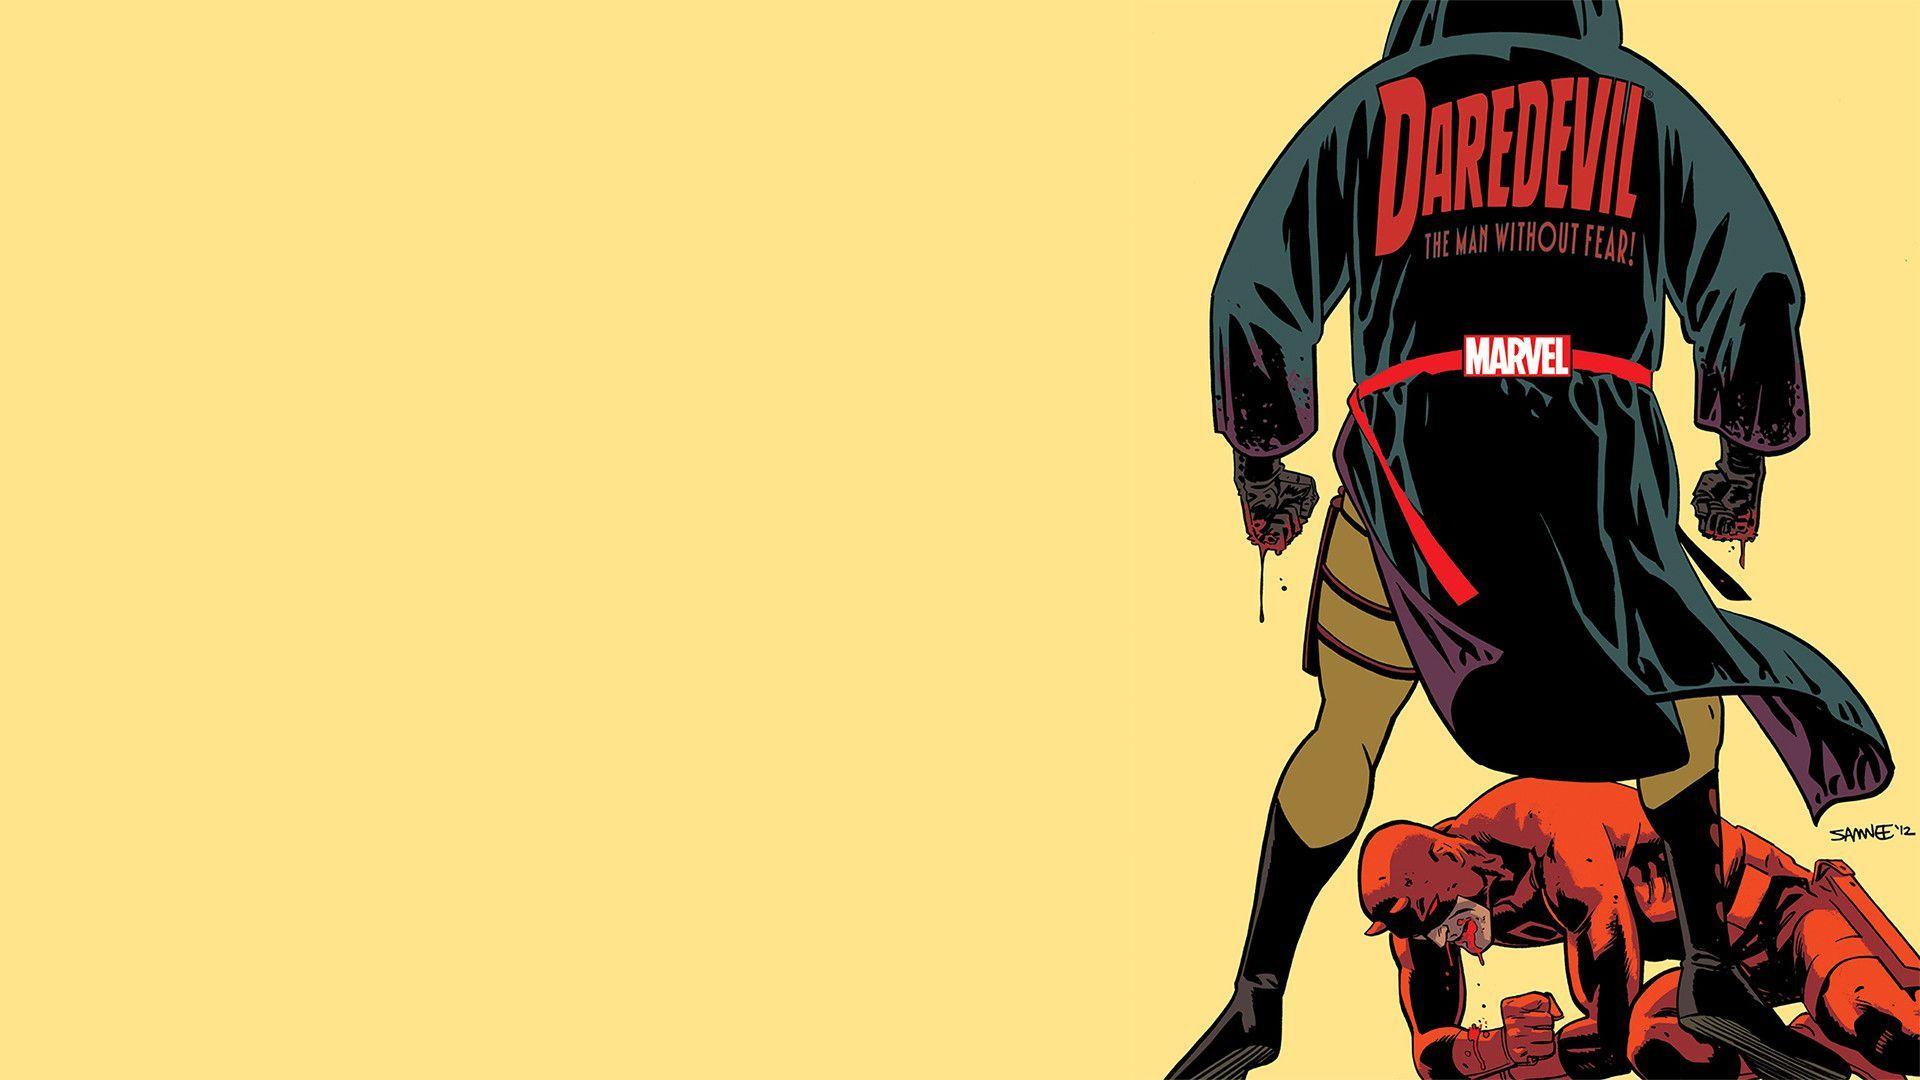 Latest Daredevil cover as a wallpaper